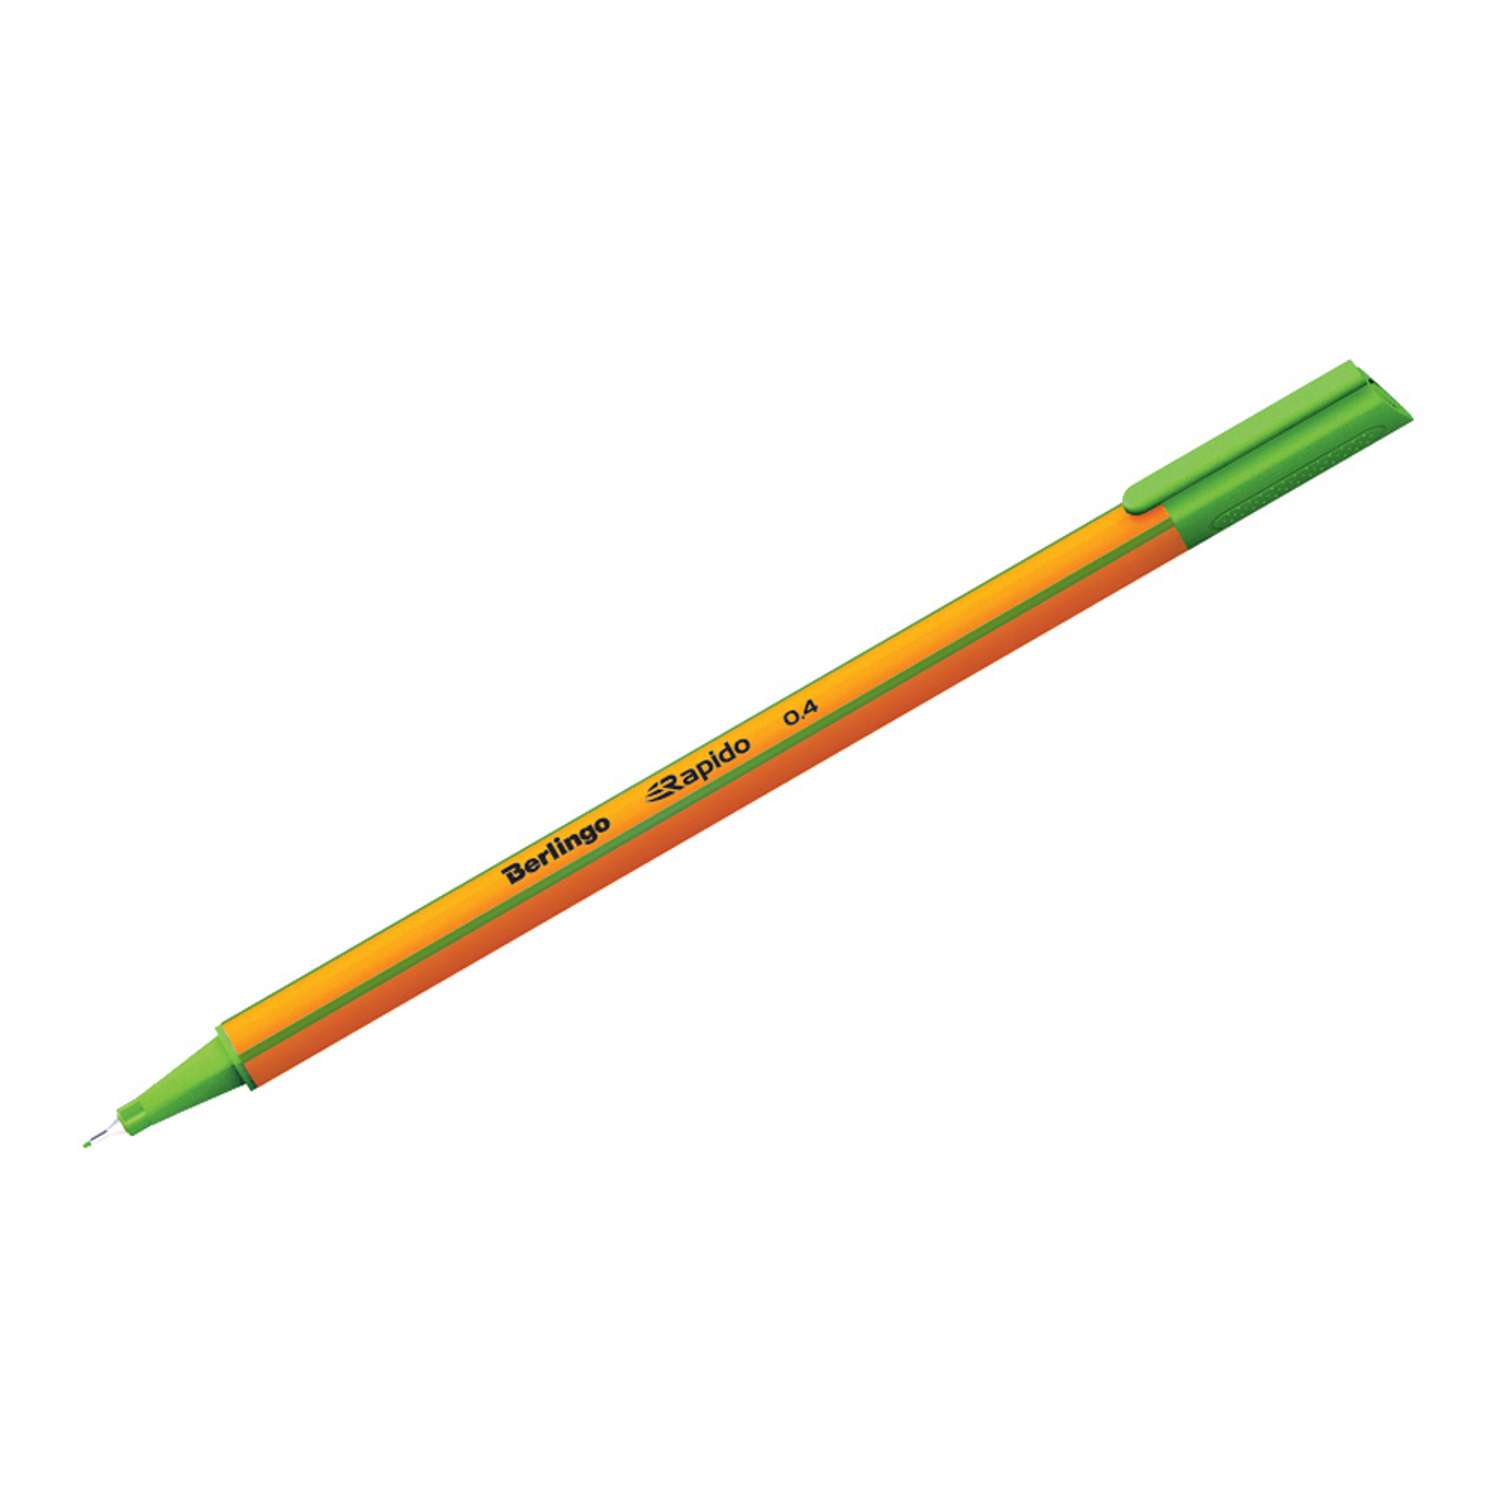 Ручка капиллярная BERLINGO Rapido светло-зеленая 04мм трехгранная набор 12 шт - фото 1